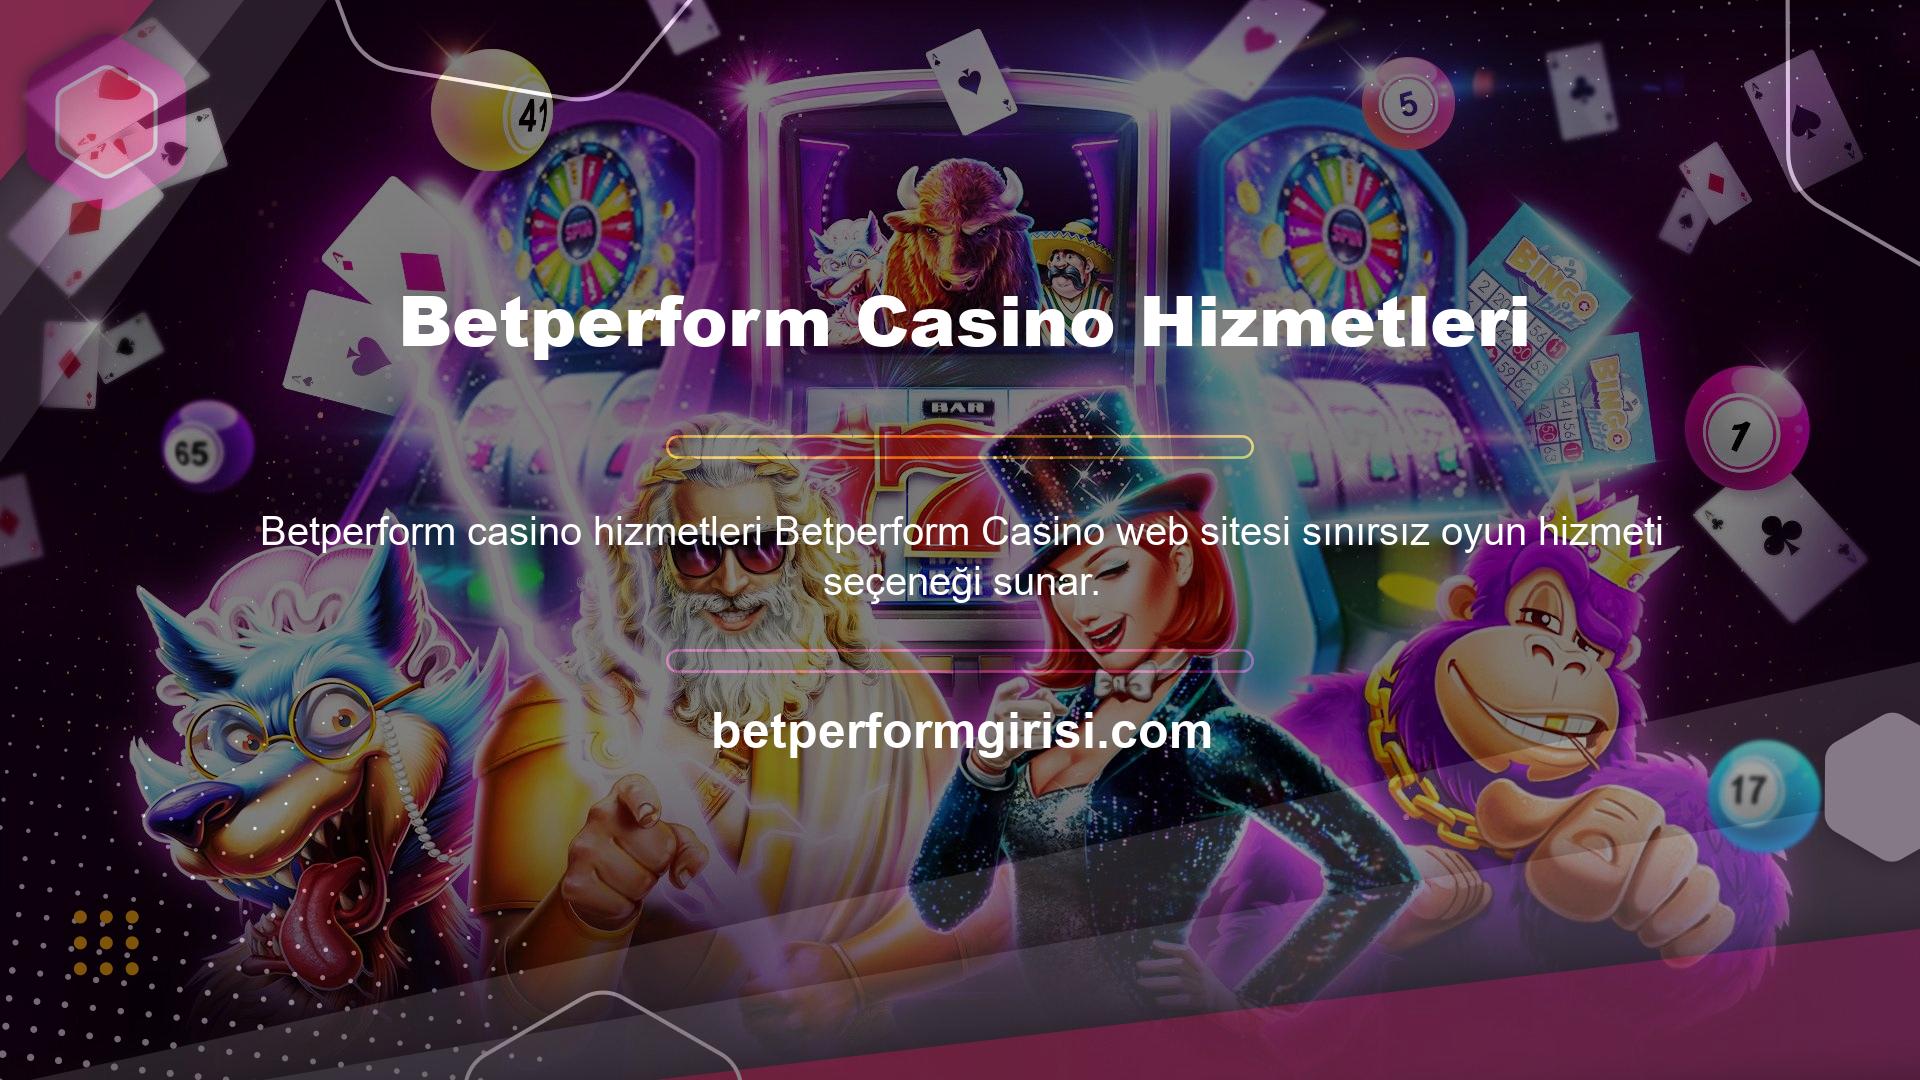 Casinolar, oyun yelpazesini slot makinelerine ve canlı casinolar oyunlarına ayırır